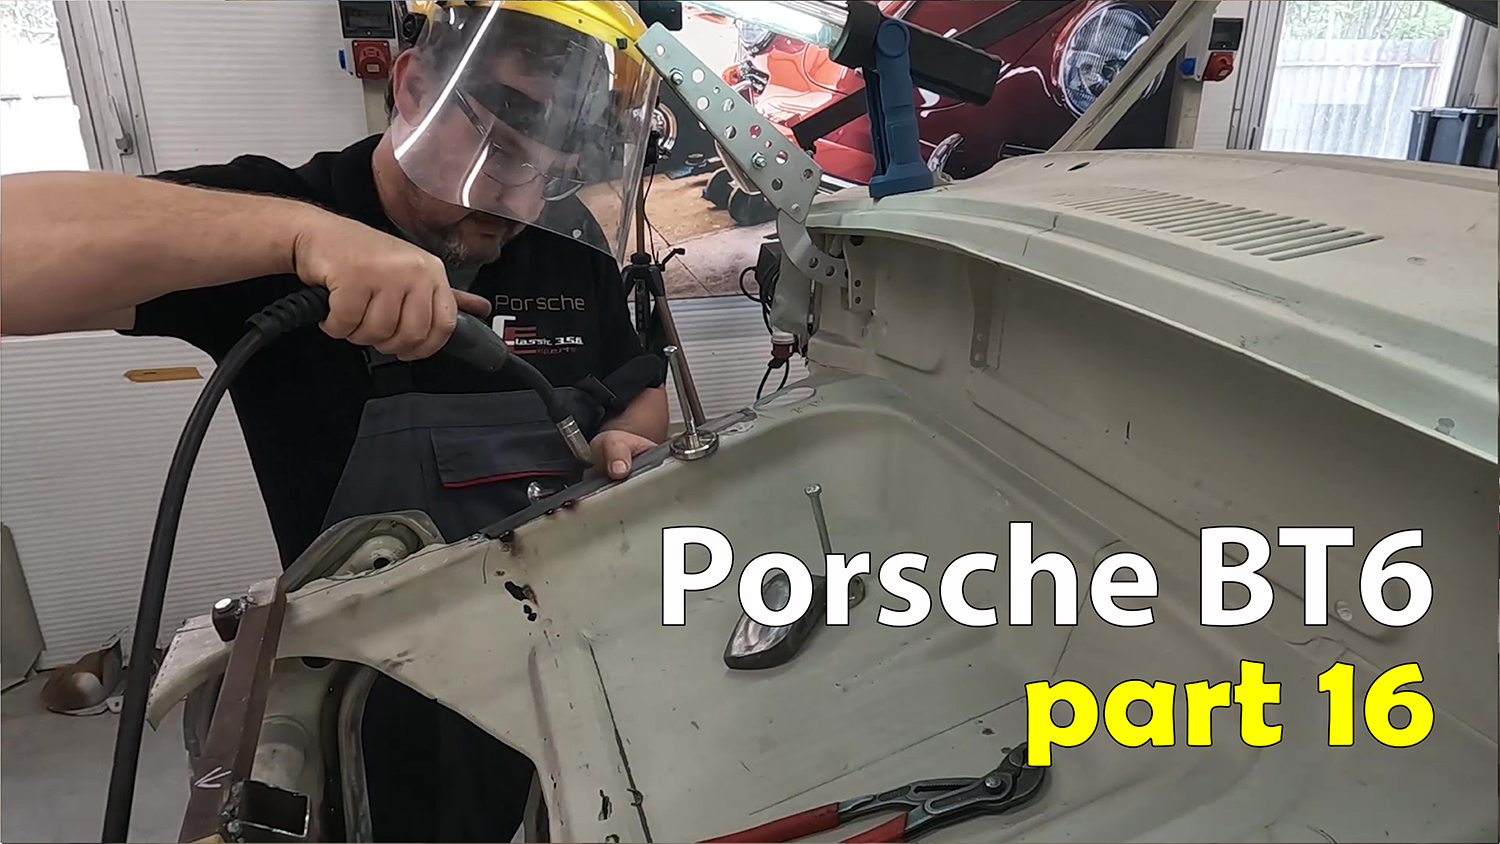 Porsche BT6 part 16